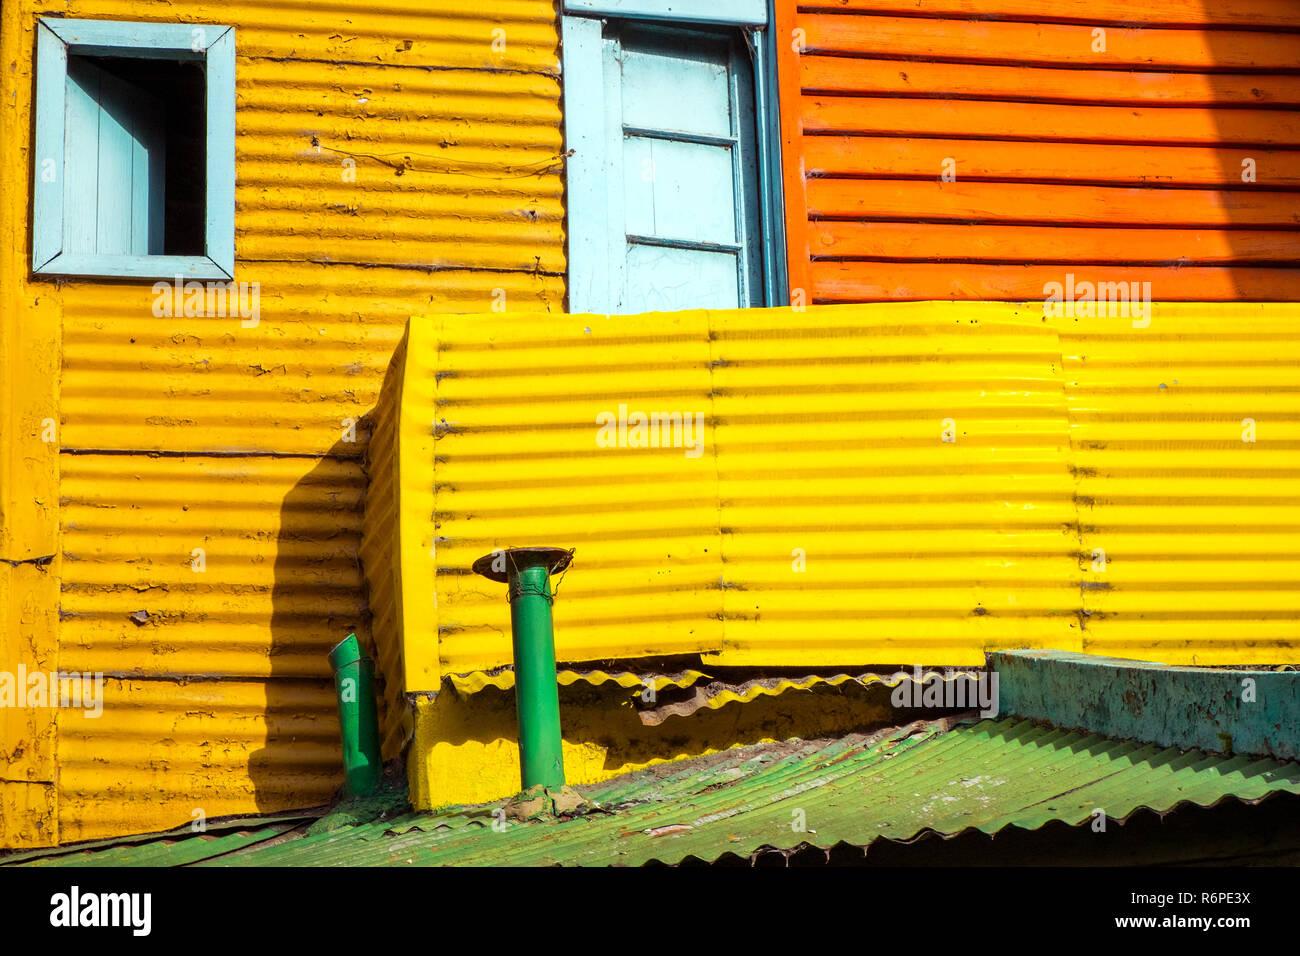 Détail d'une façade de maison à la Boca, Buenos Aires, Argentine Banque D'Images